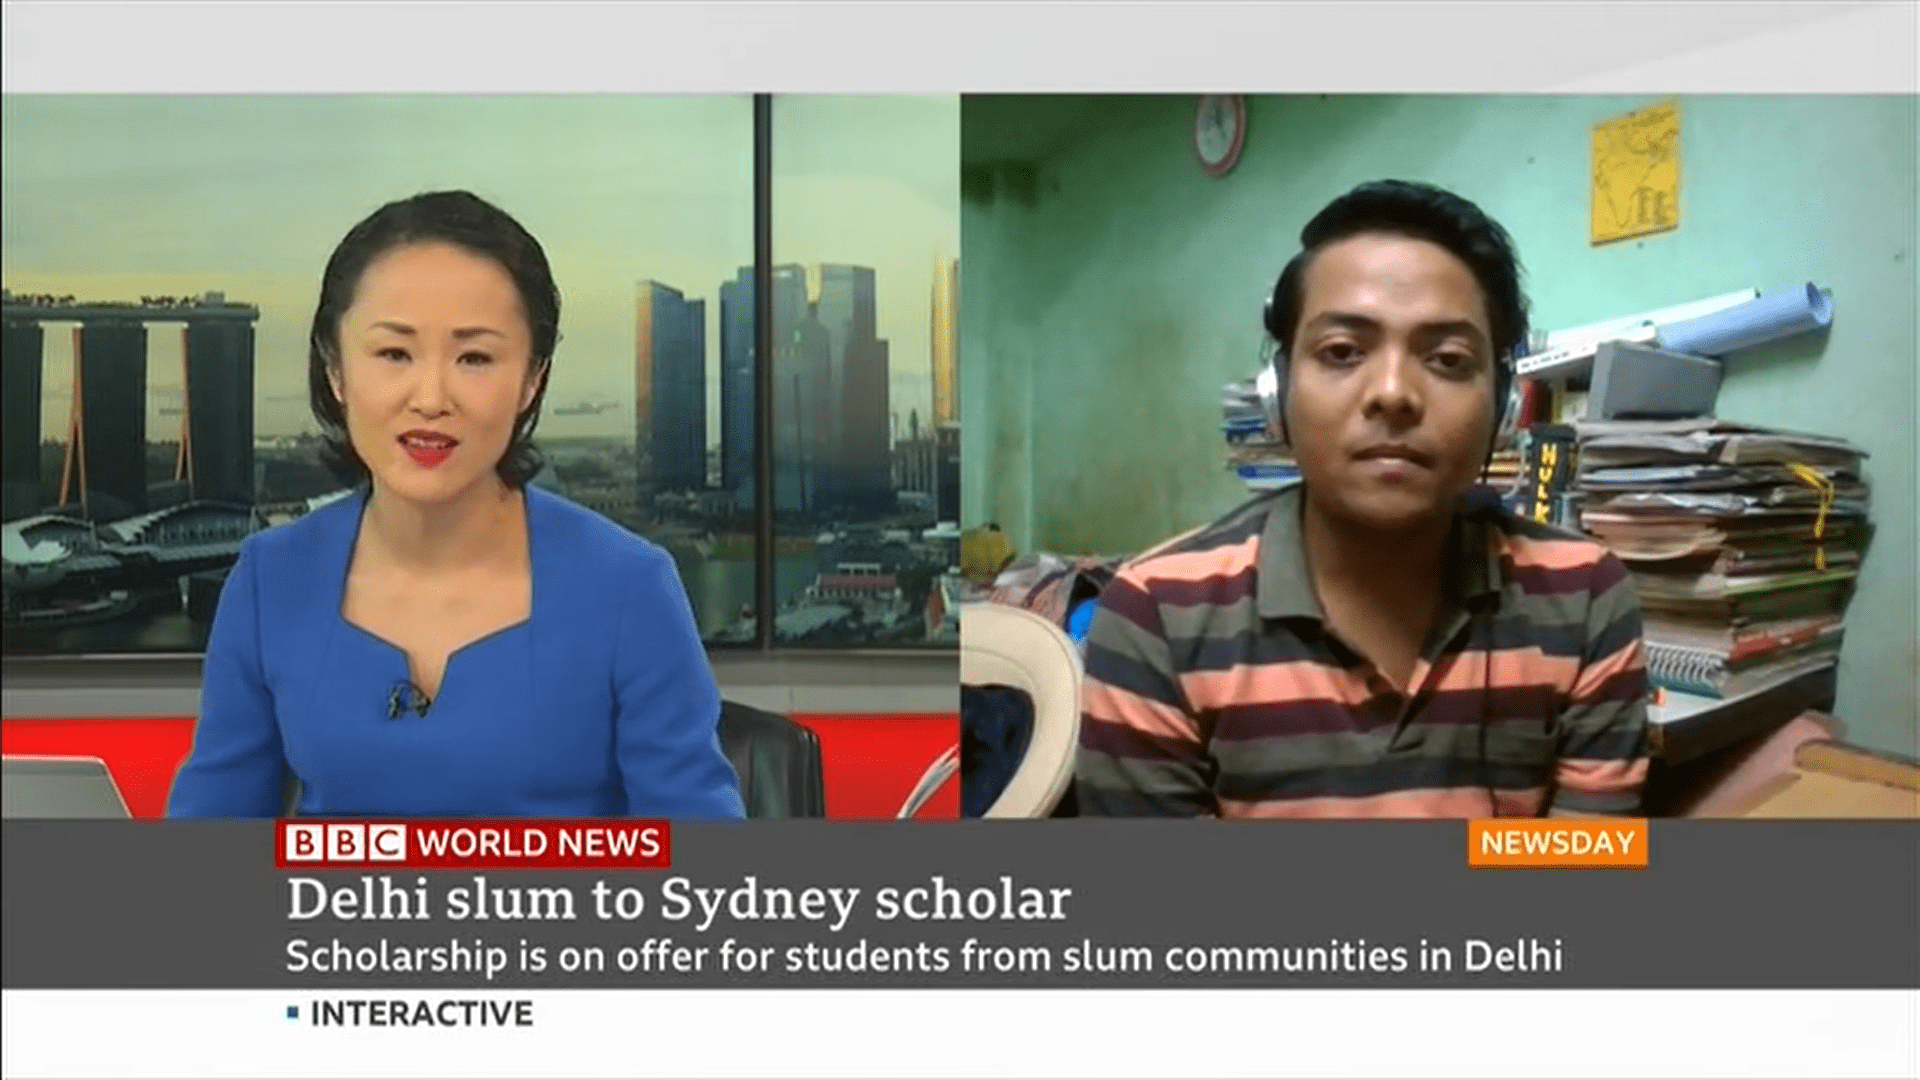 Tushar’s journey from Delhi slum to Sydney scholar